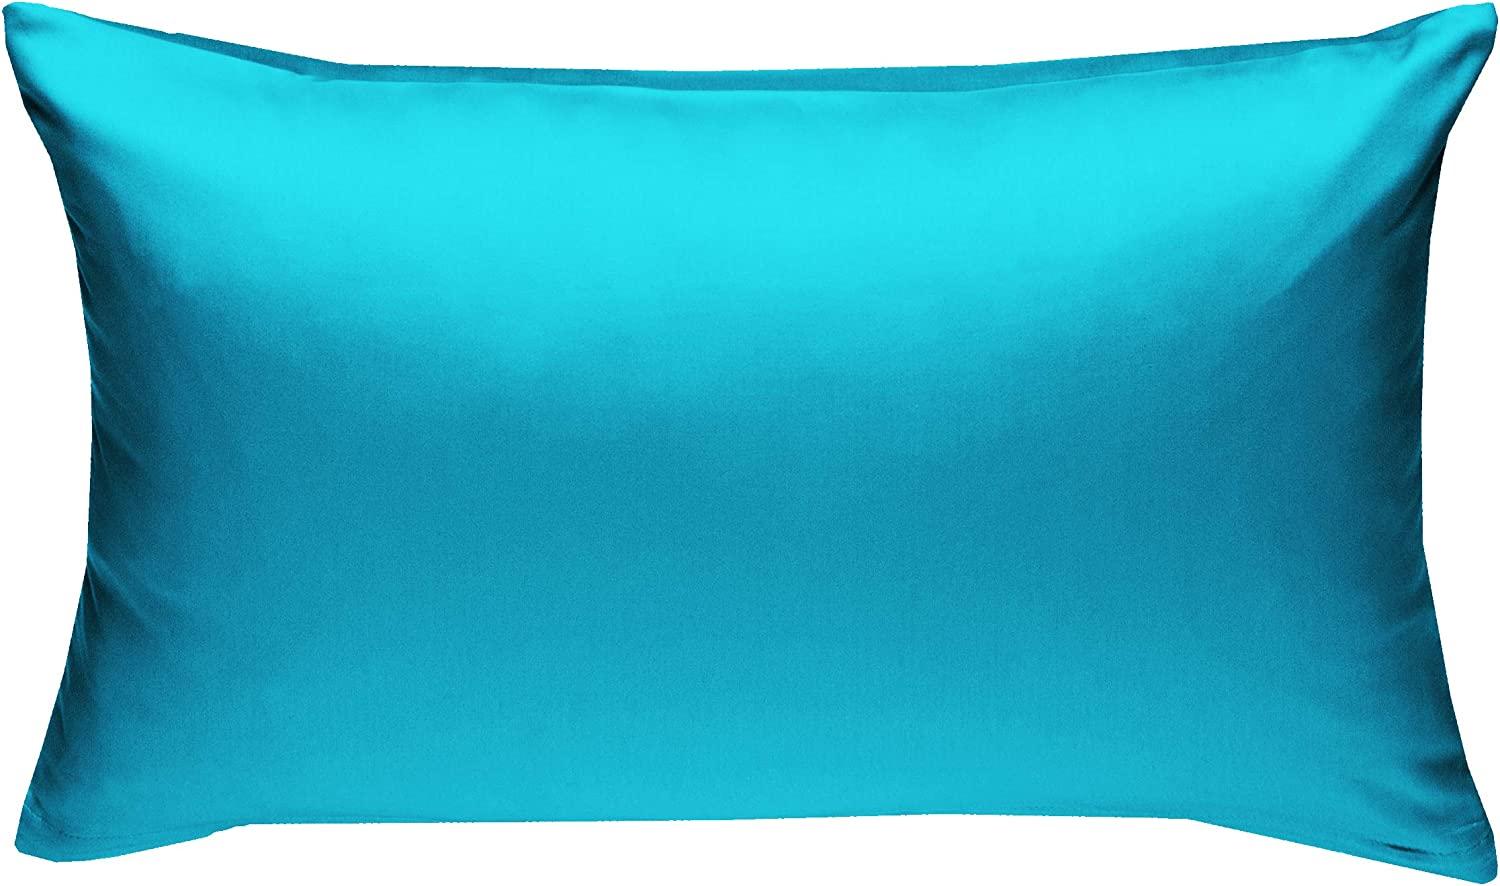 Bettwaesche-mit-Stil Mako-Satin / Baumwollsatin Bettwäsche uni / einfarbig türkis Kissenbezug 50x70 cm Bild 1